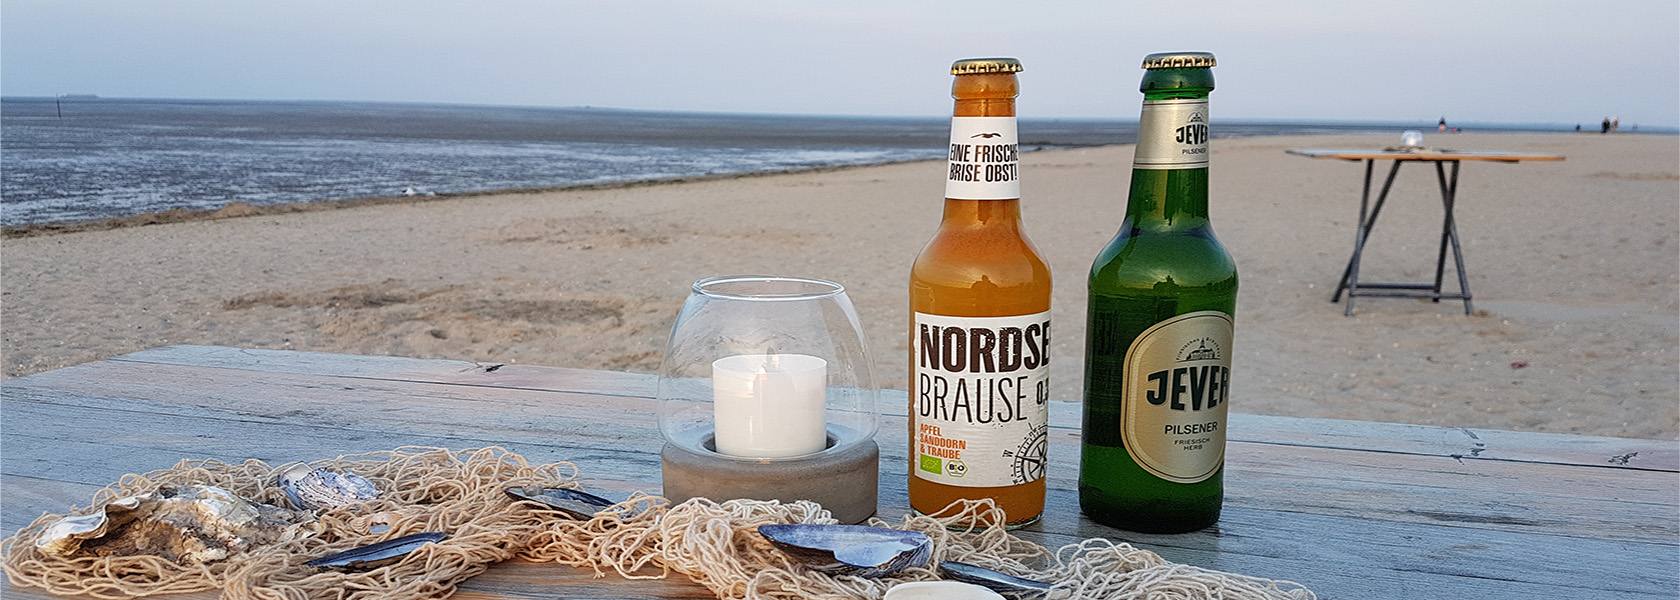 Bierflaschen am Strand, © Die Nordsee GmbH, Carolin Wulke